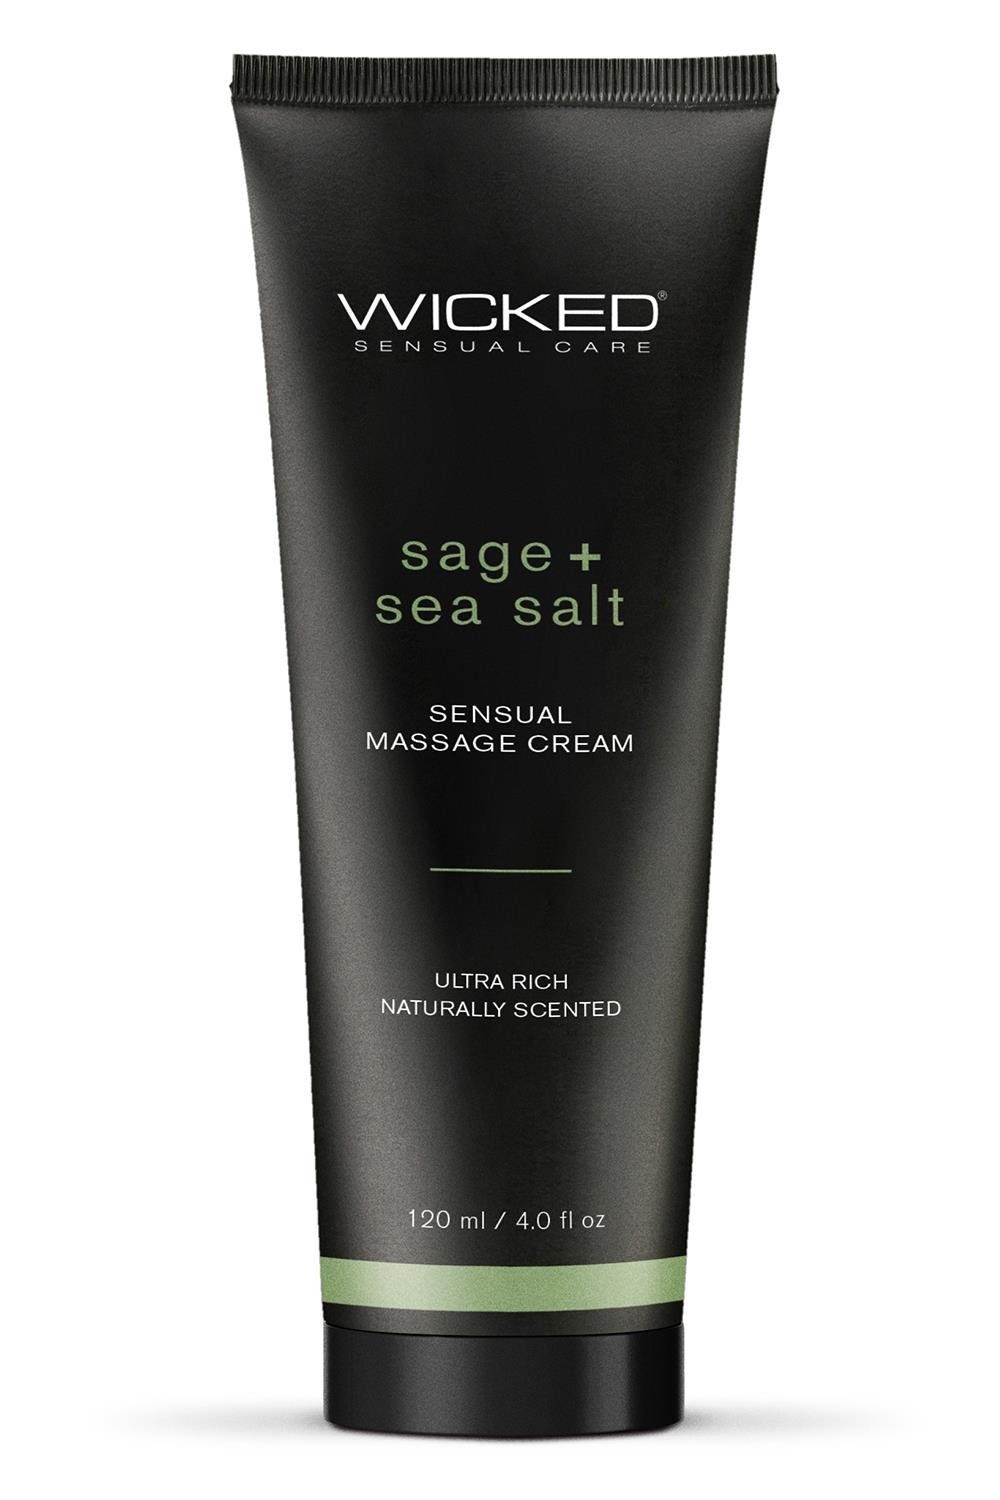 Wicked Gleit- und Massagegel Wicked Sensual Massage Cream 120ml Sage and Seasal Scented